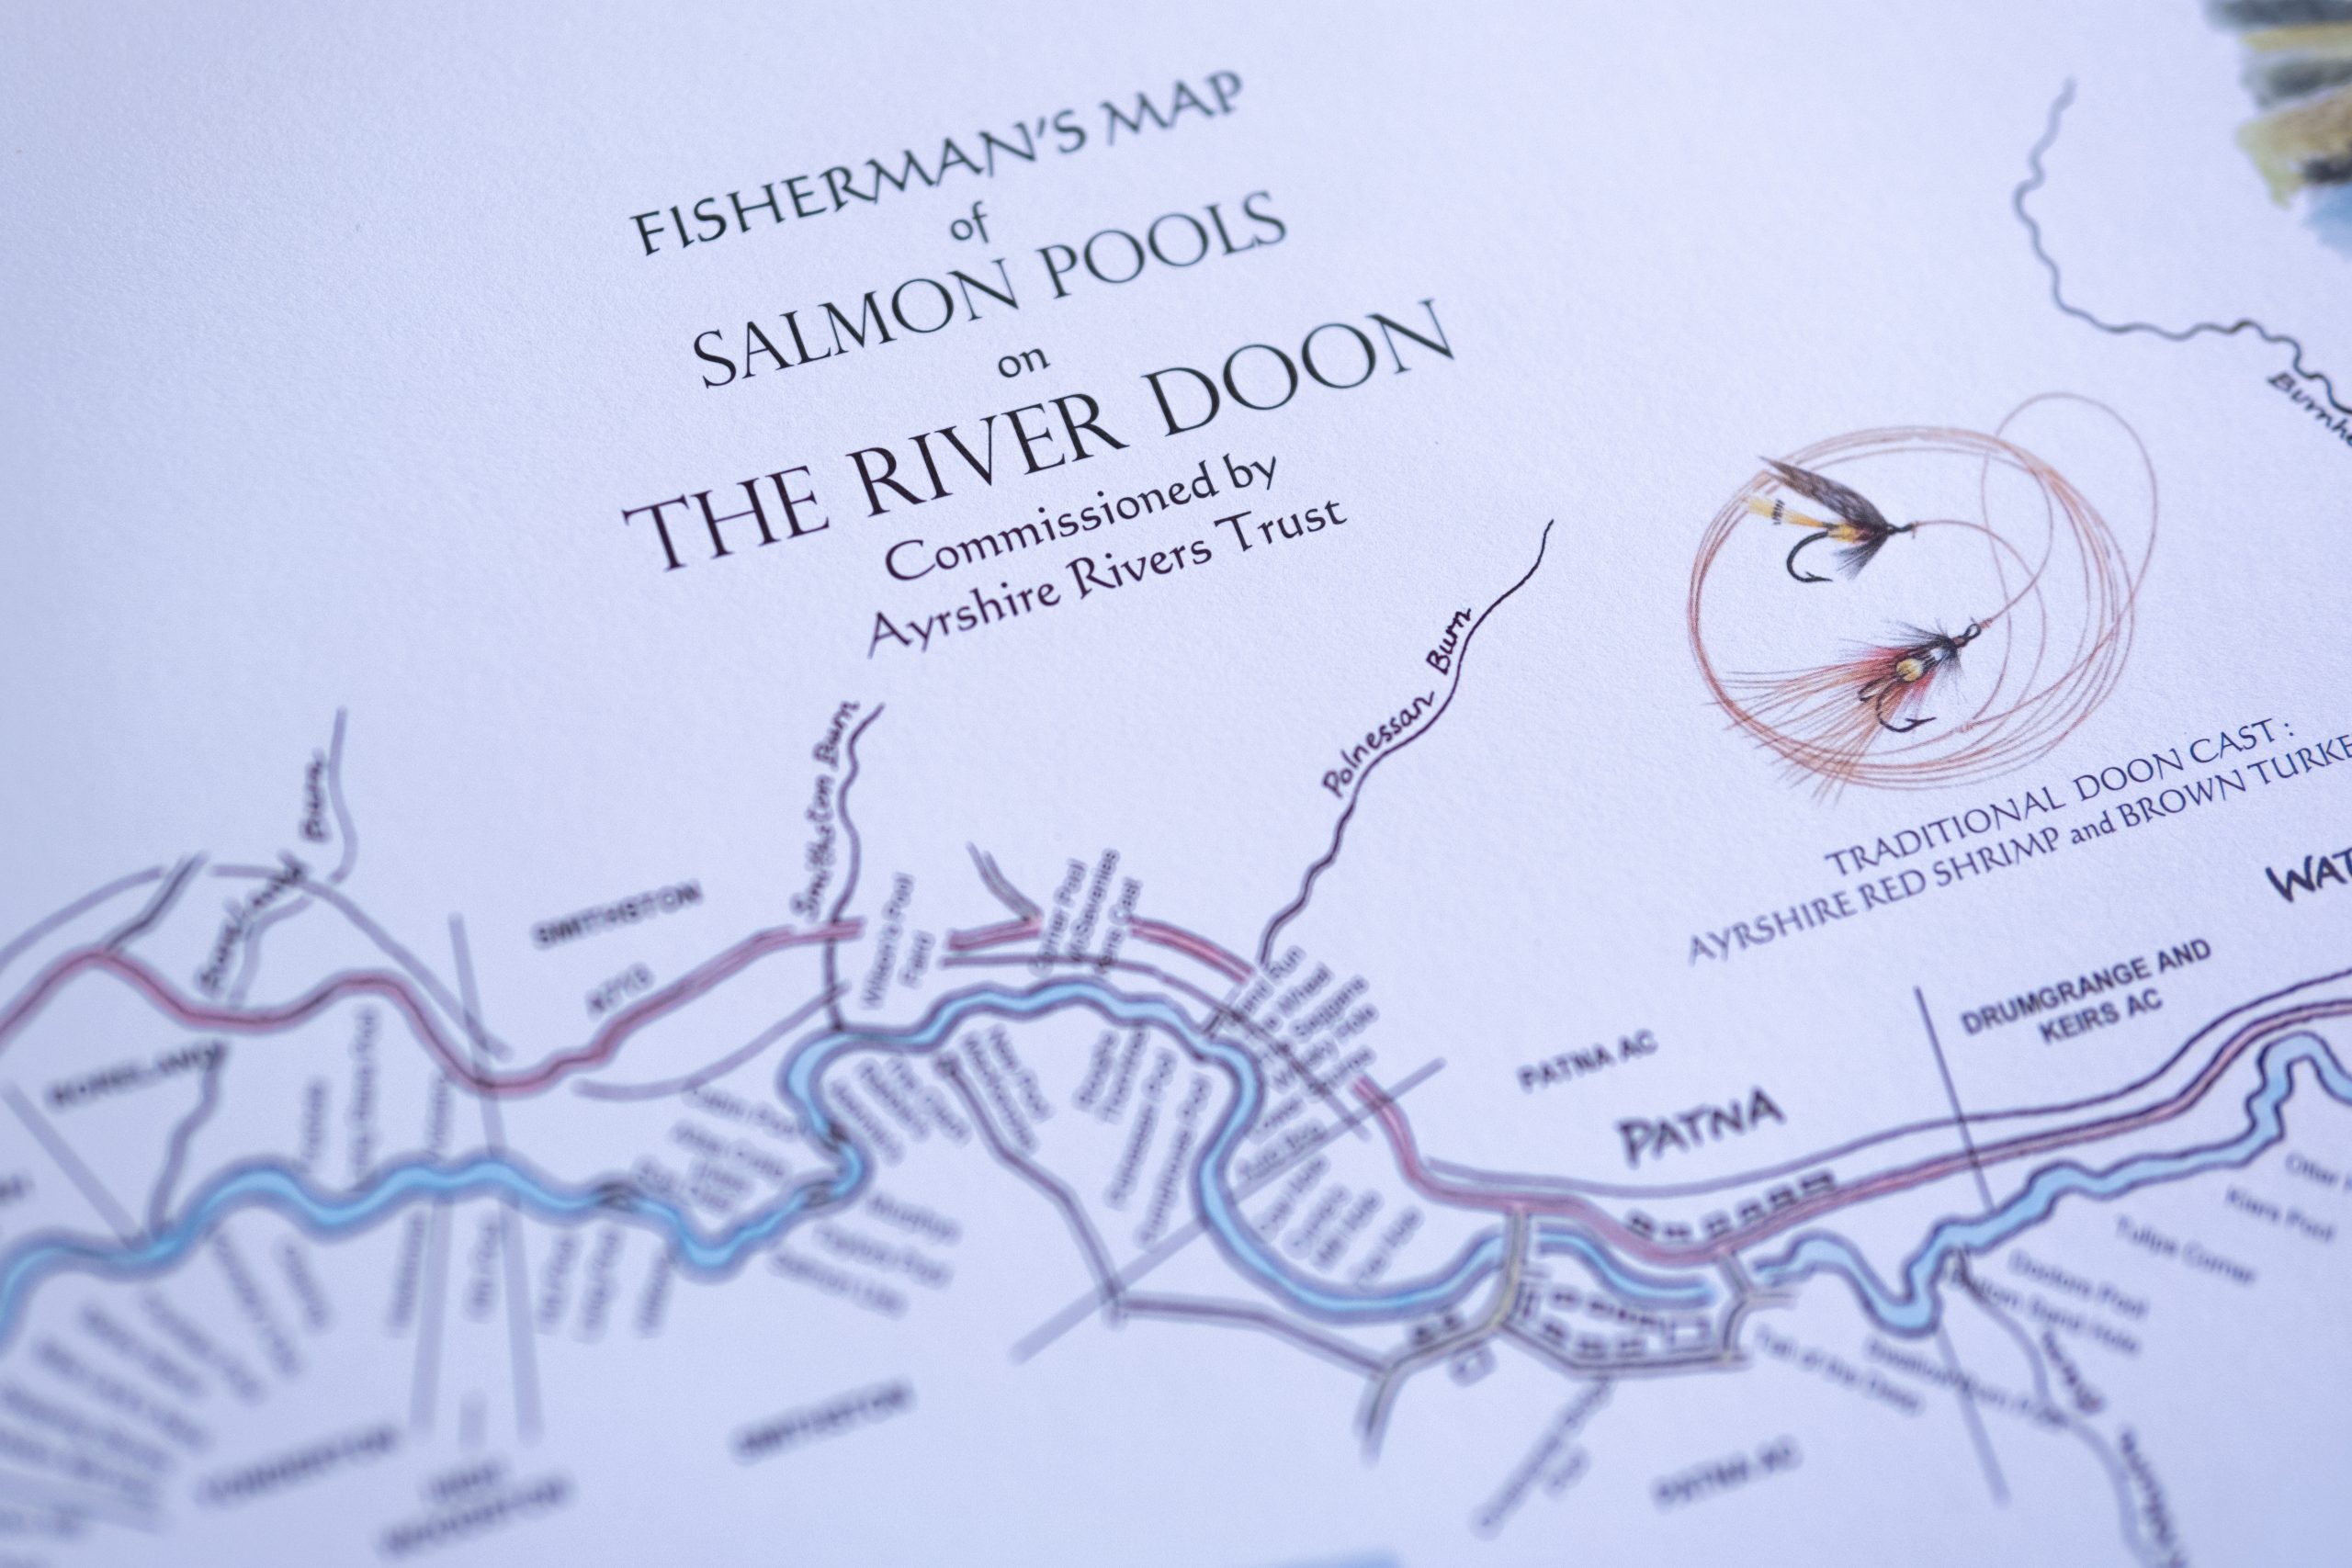 River Doon map